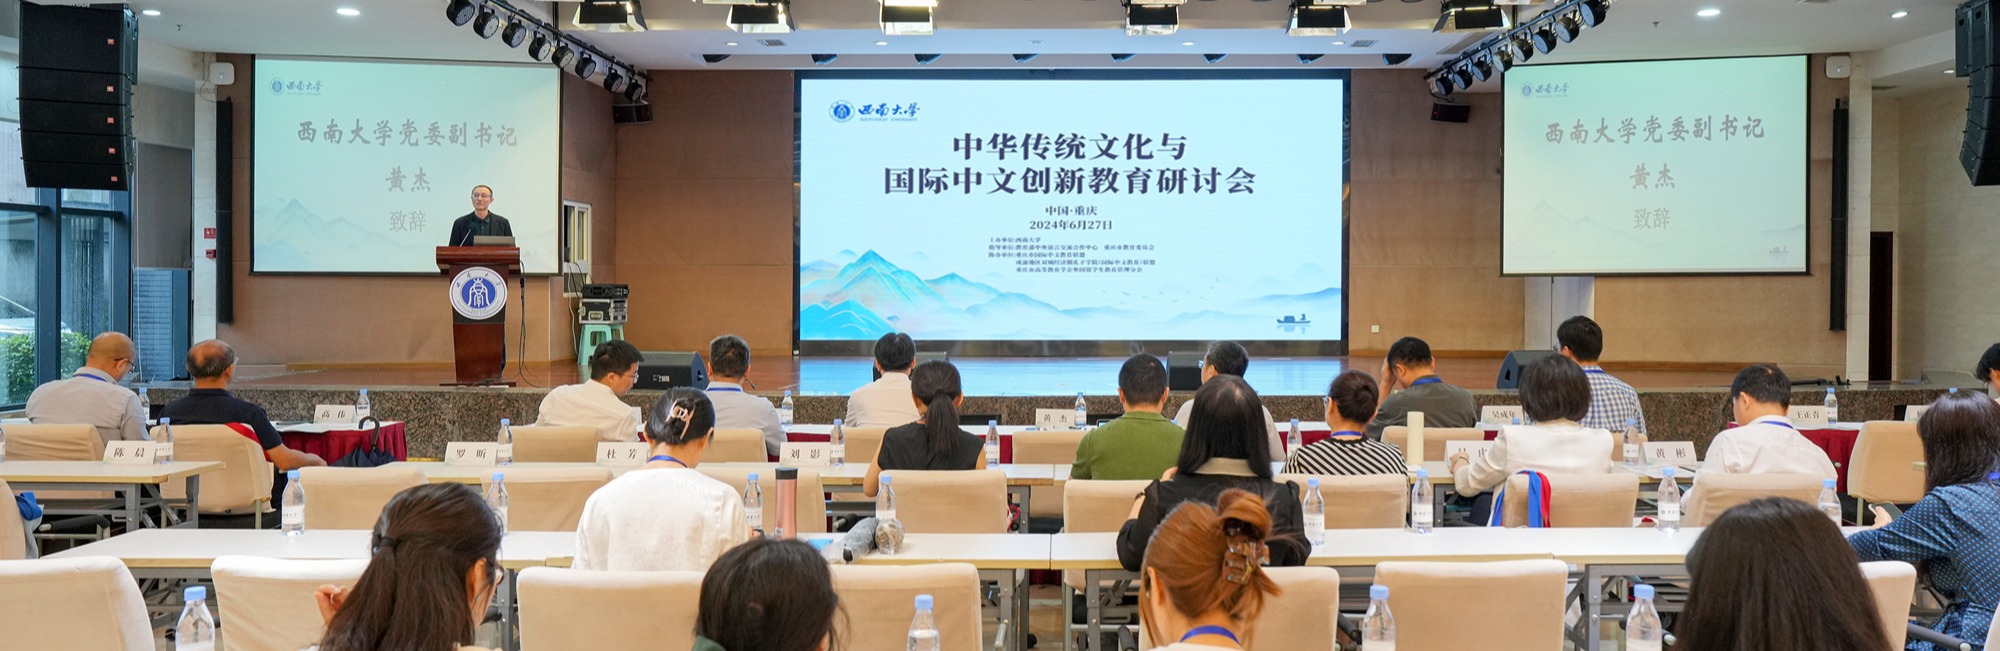 学校举办中华传统文化与国际中文创新教育研讨会